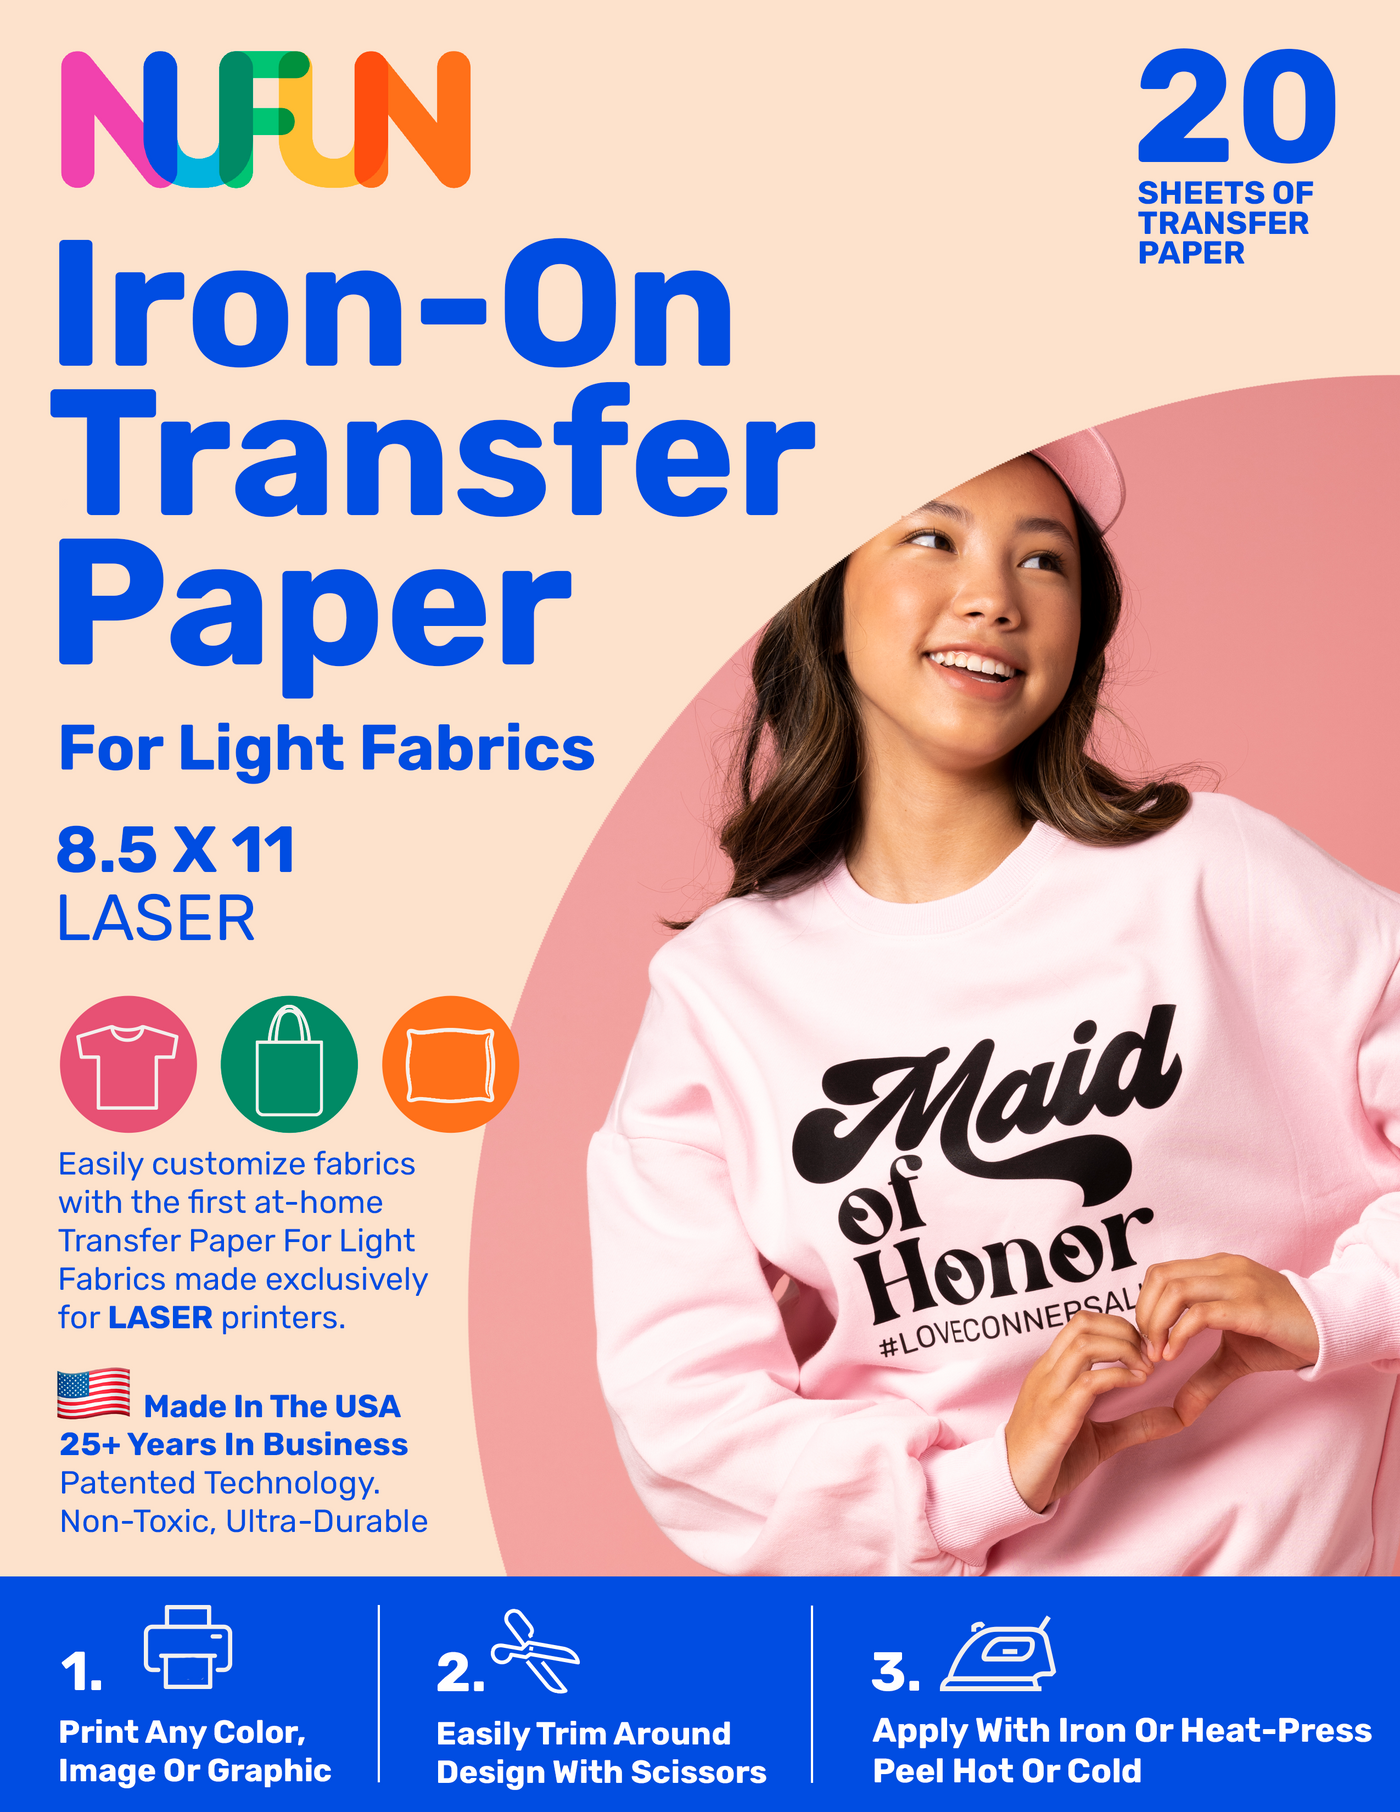 Laser Printable Transfer Paper for Light Fabrics 8.5"x11"